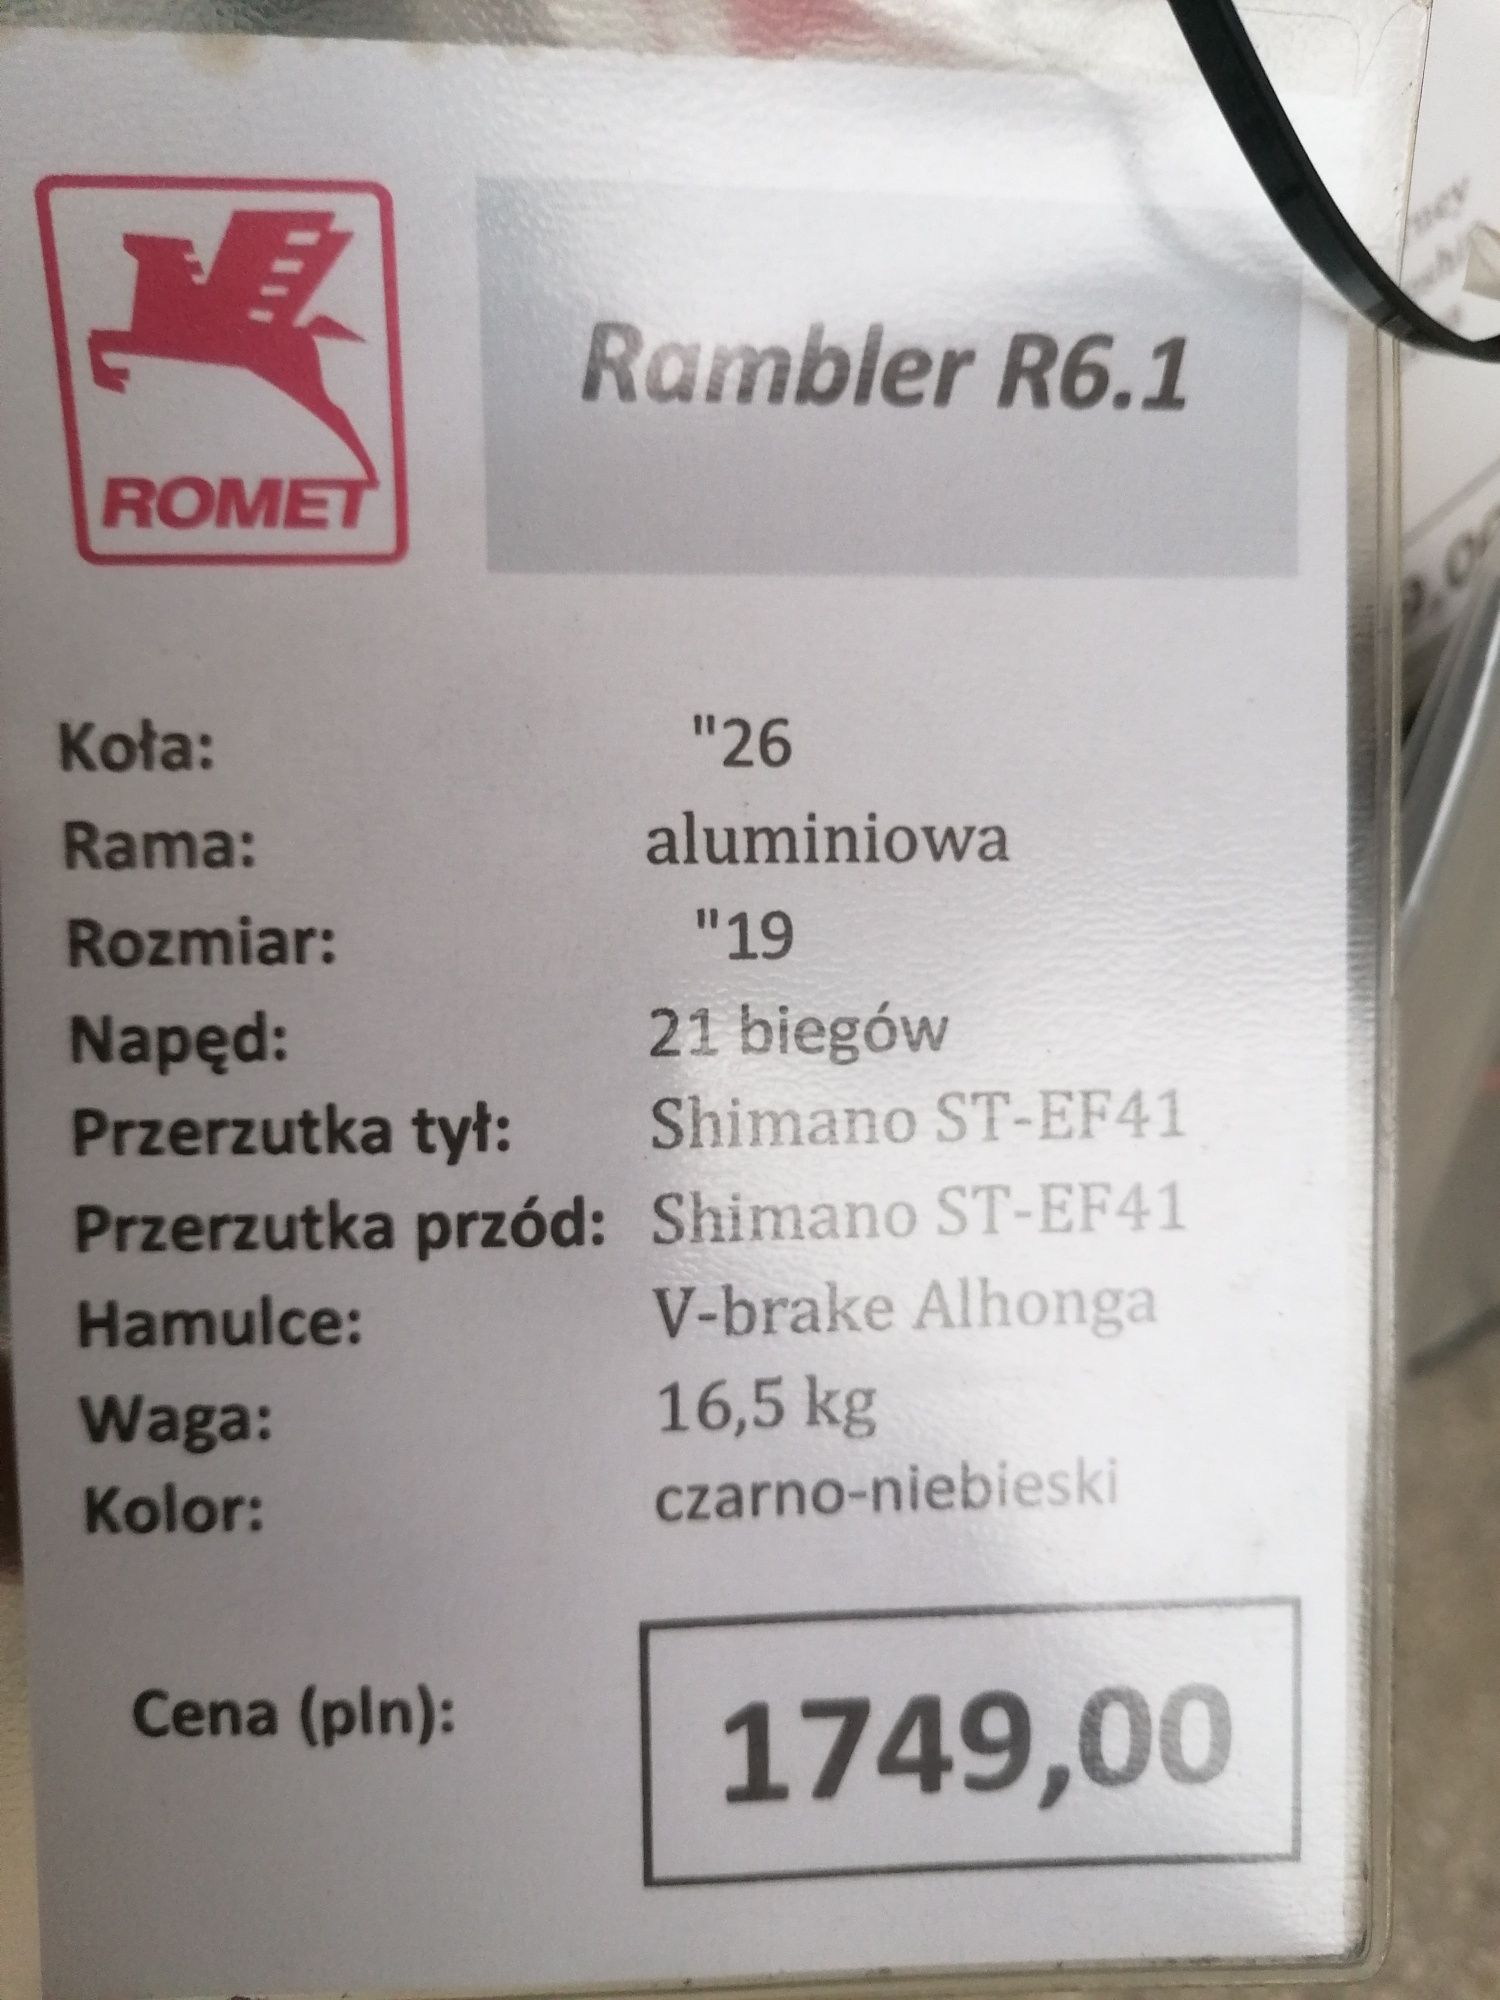 Rower Romet Rambler R6.1 nowy, wyprzedaż - likwidacja sklepu!